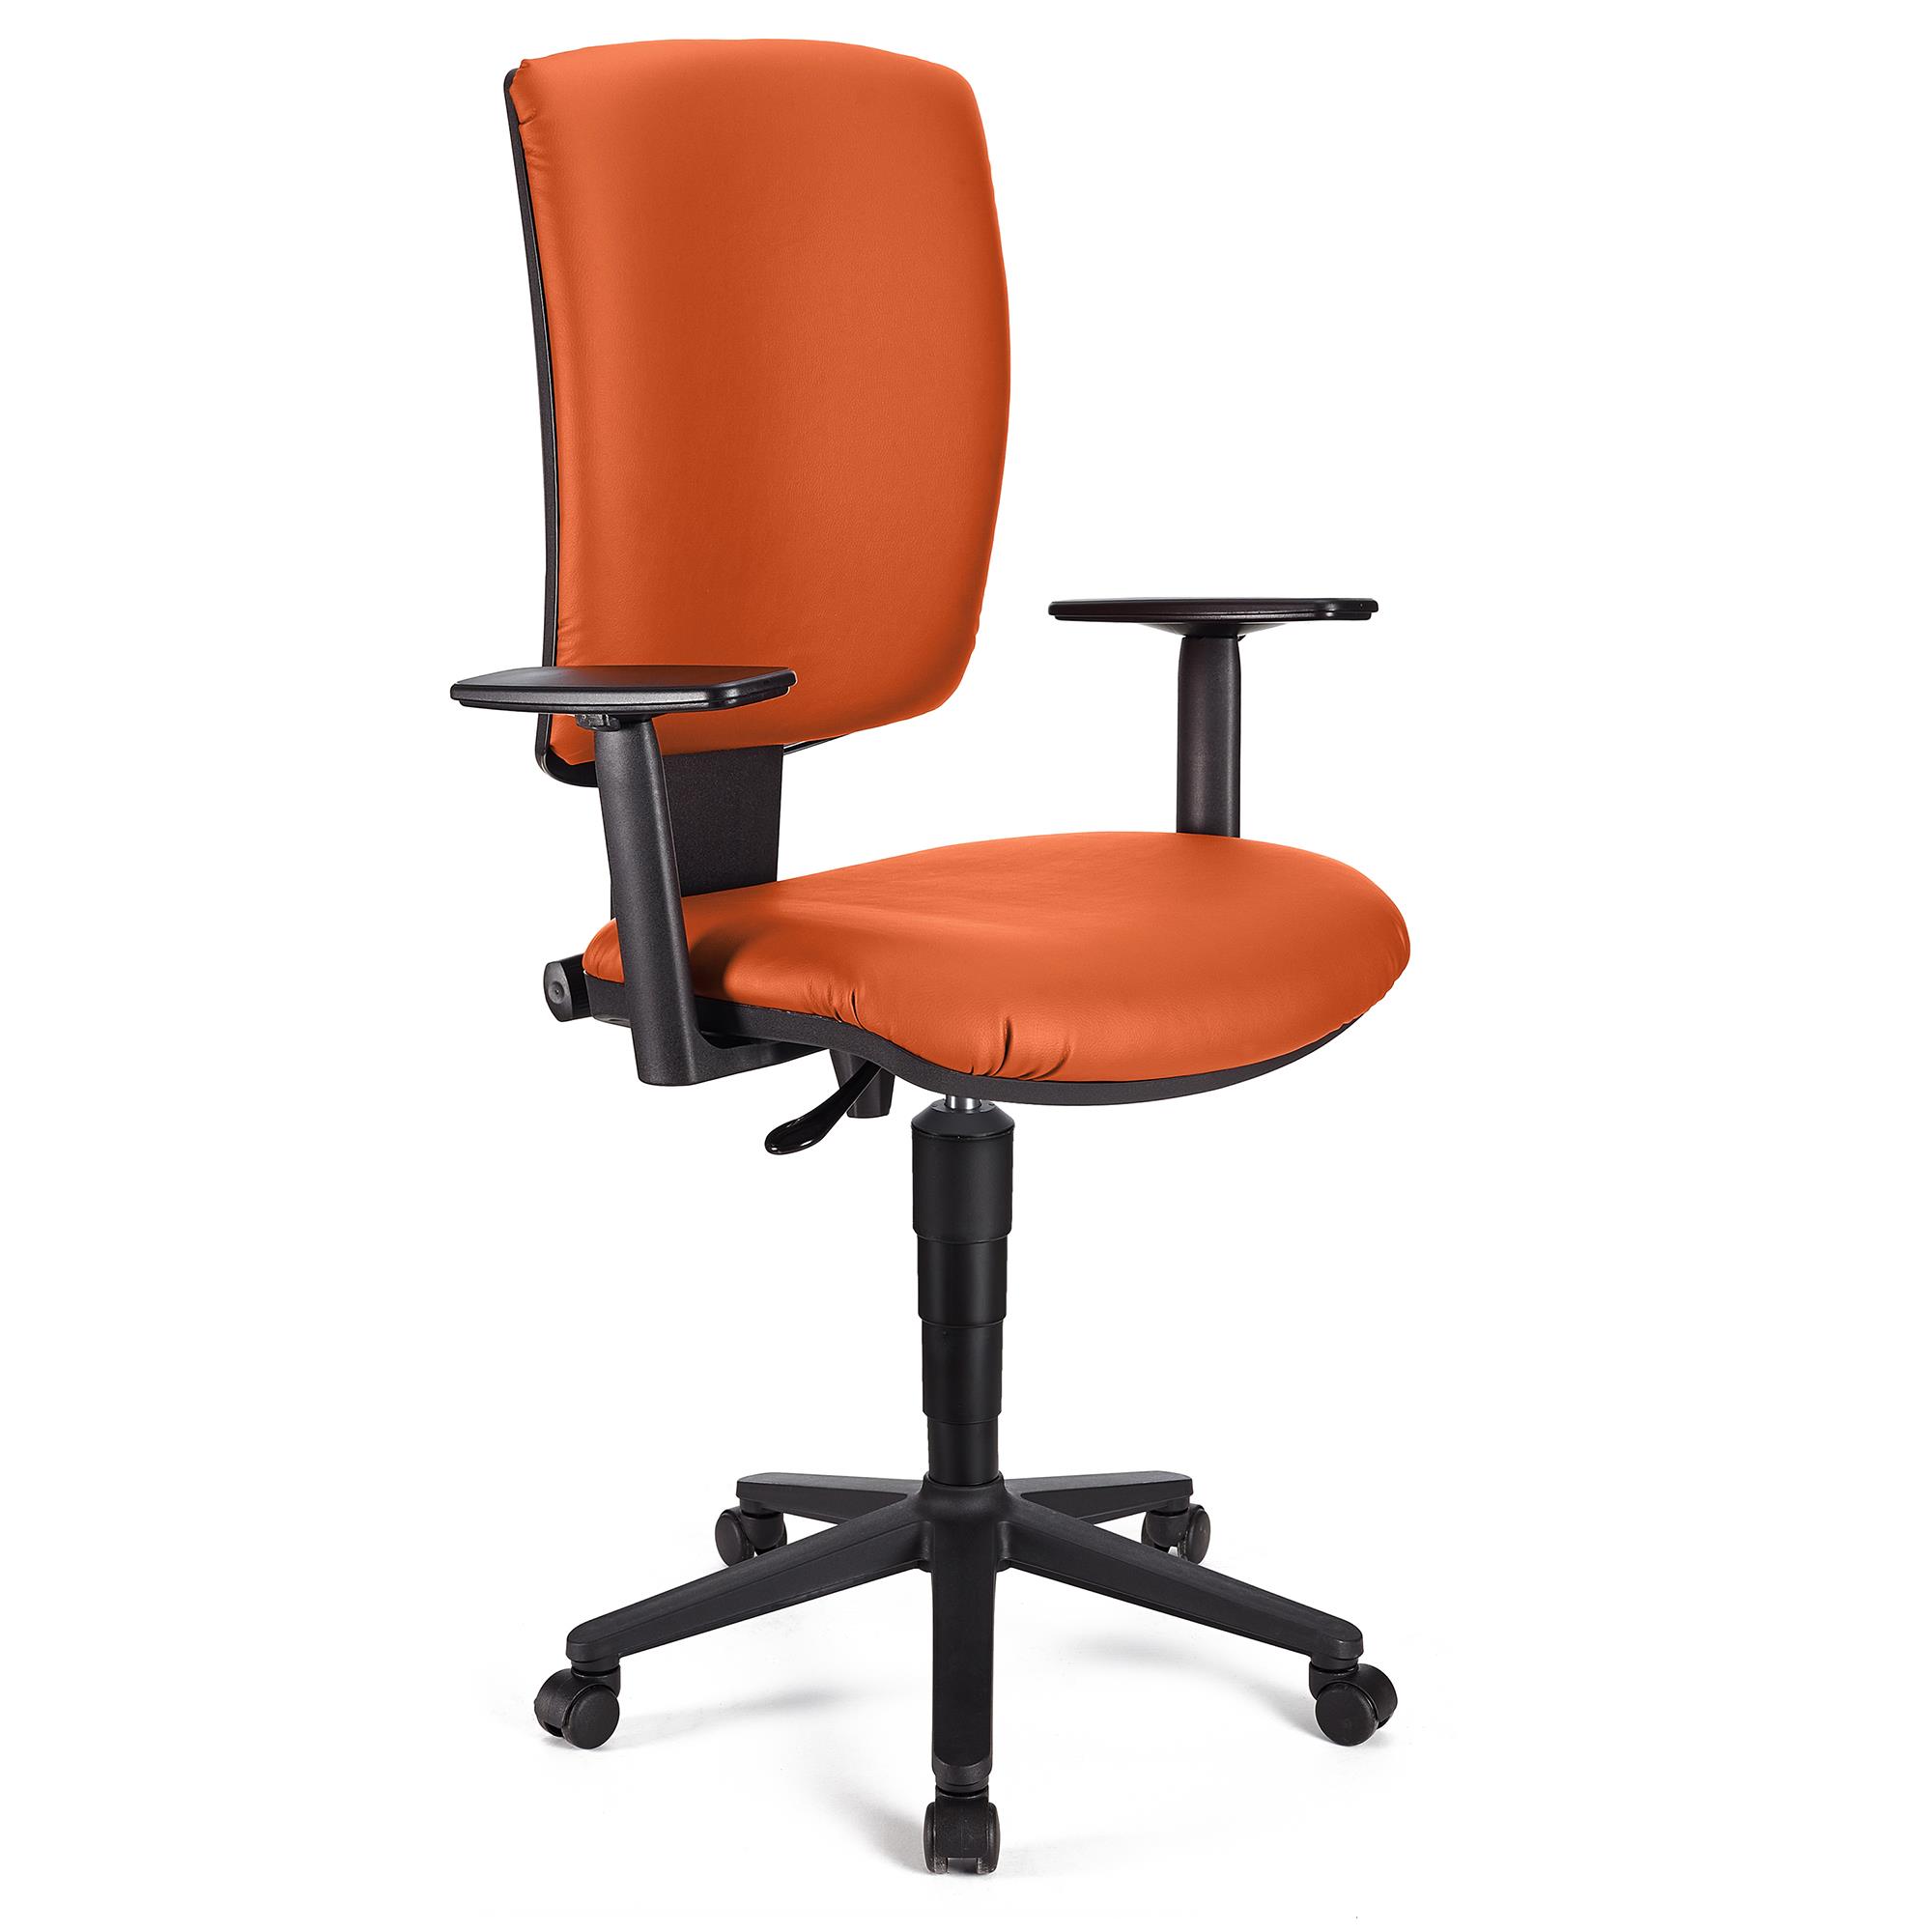 Bürostuhl ATLAS PLUS LEDER, verstellbare Rücken- und Armlehnen, dicke Polsterung, Farbe Orange